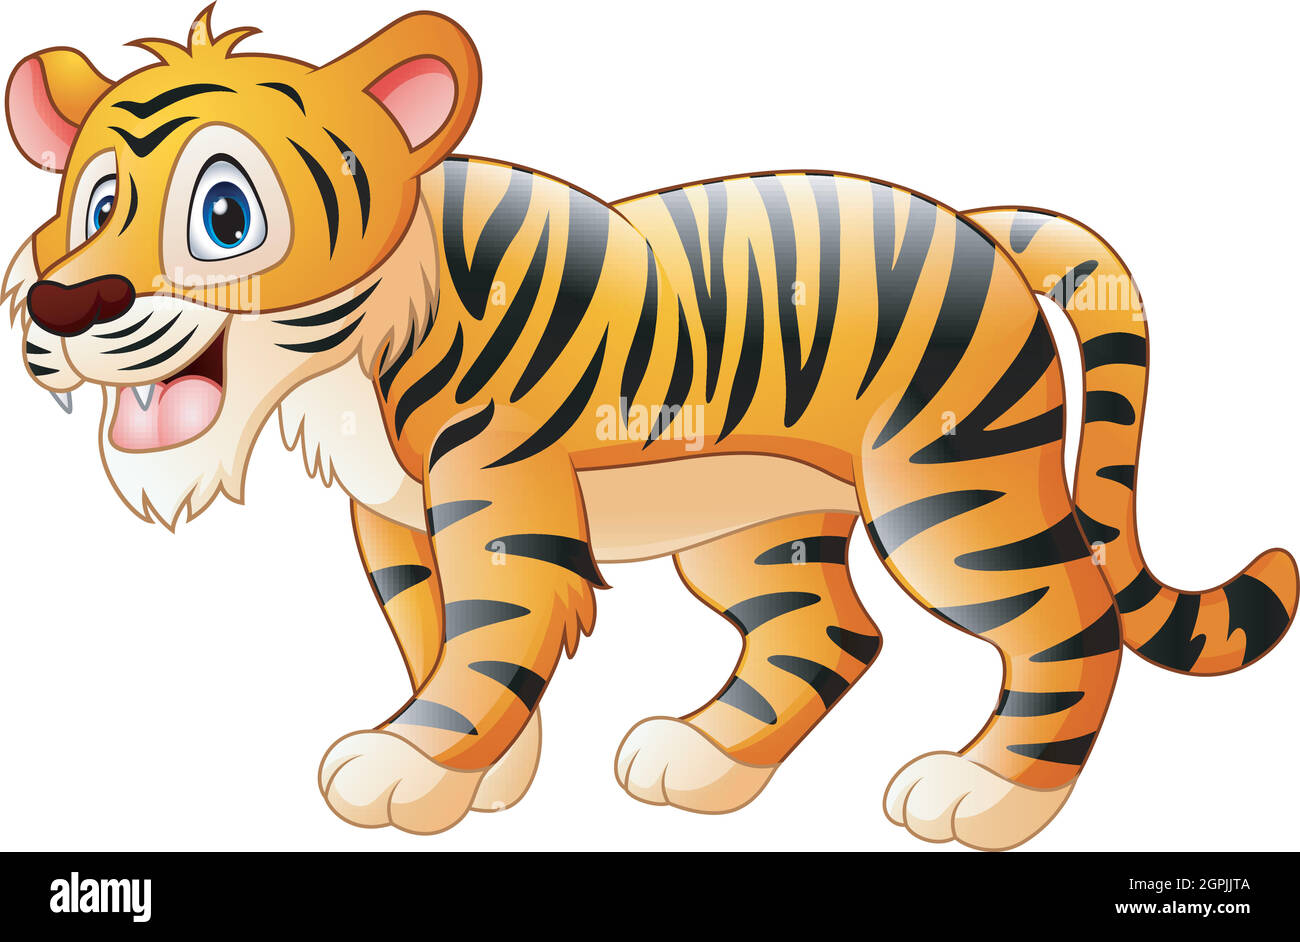 Vector illustration of Cute tiger cartoon Stock Vector Image & Art ...